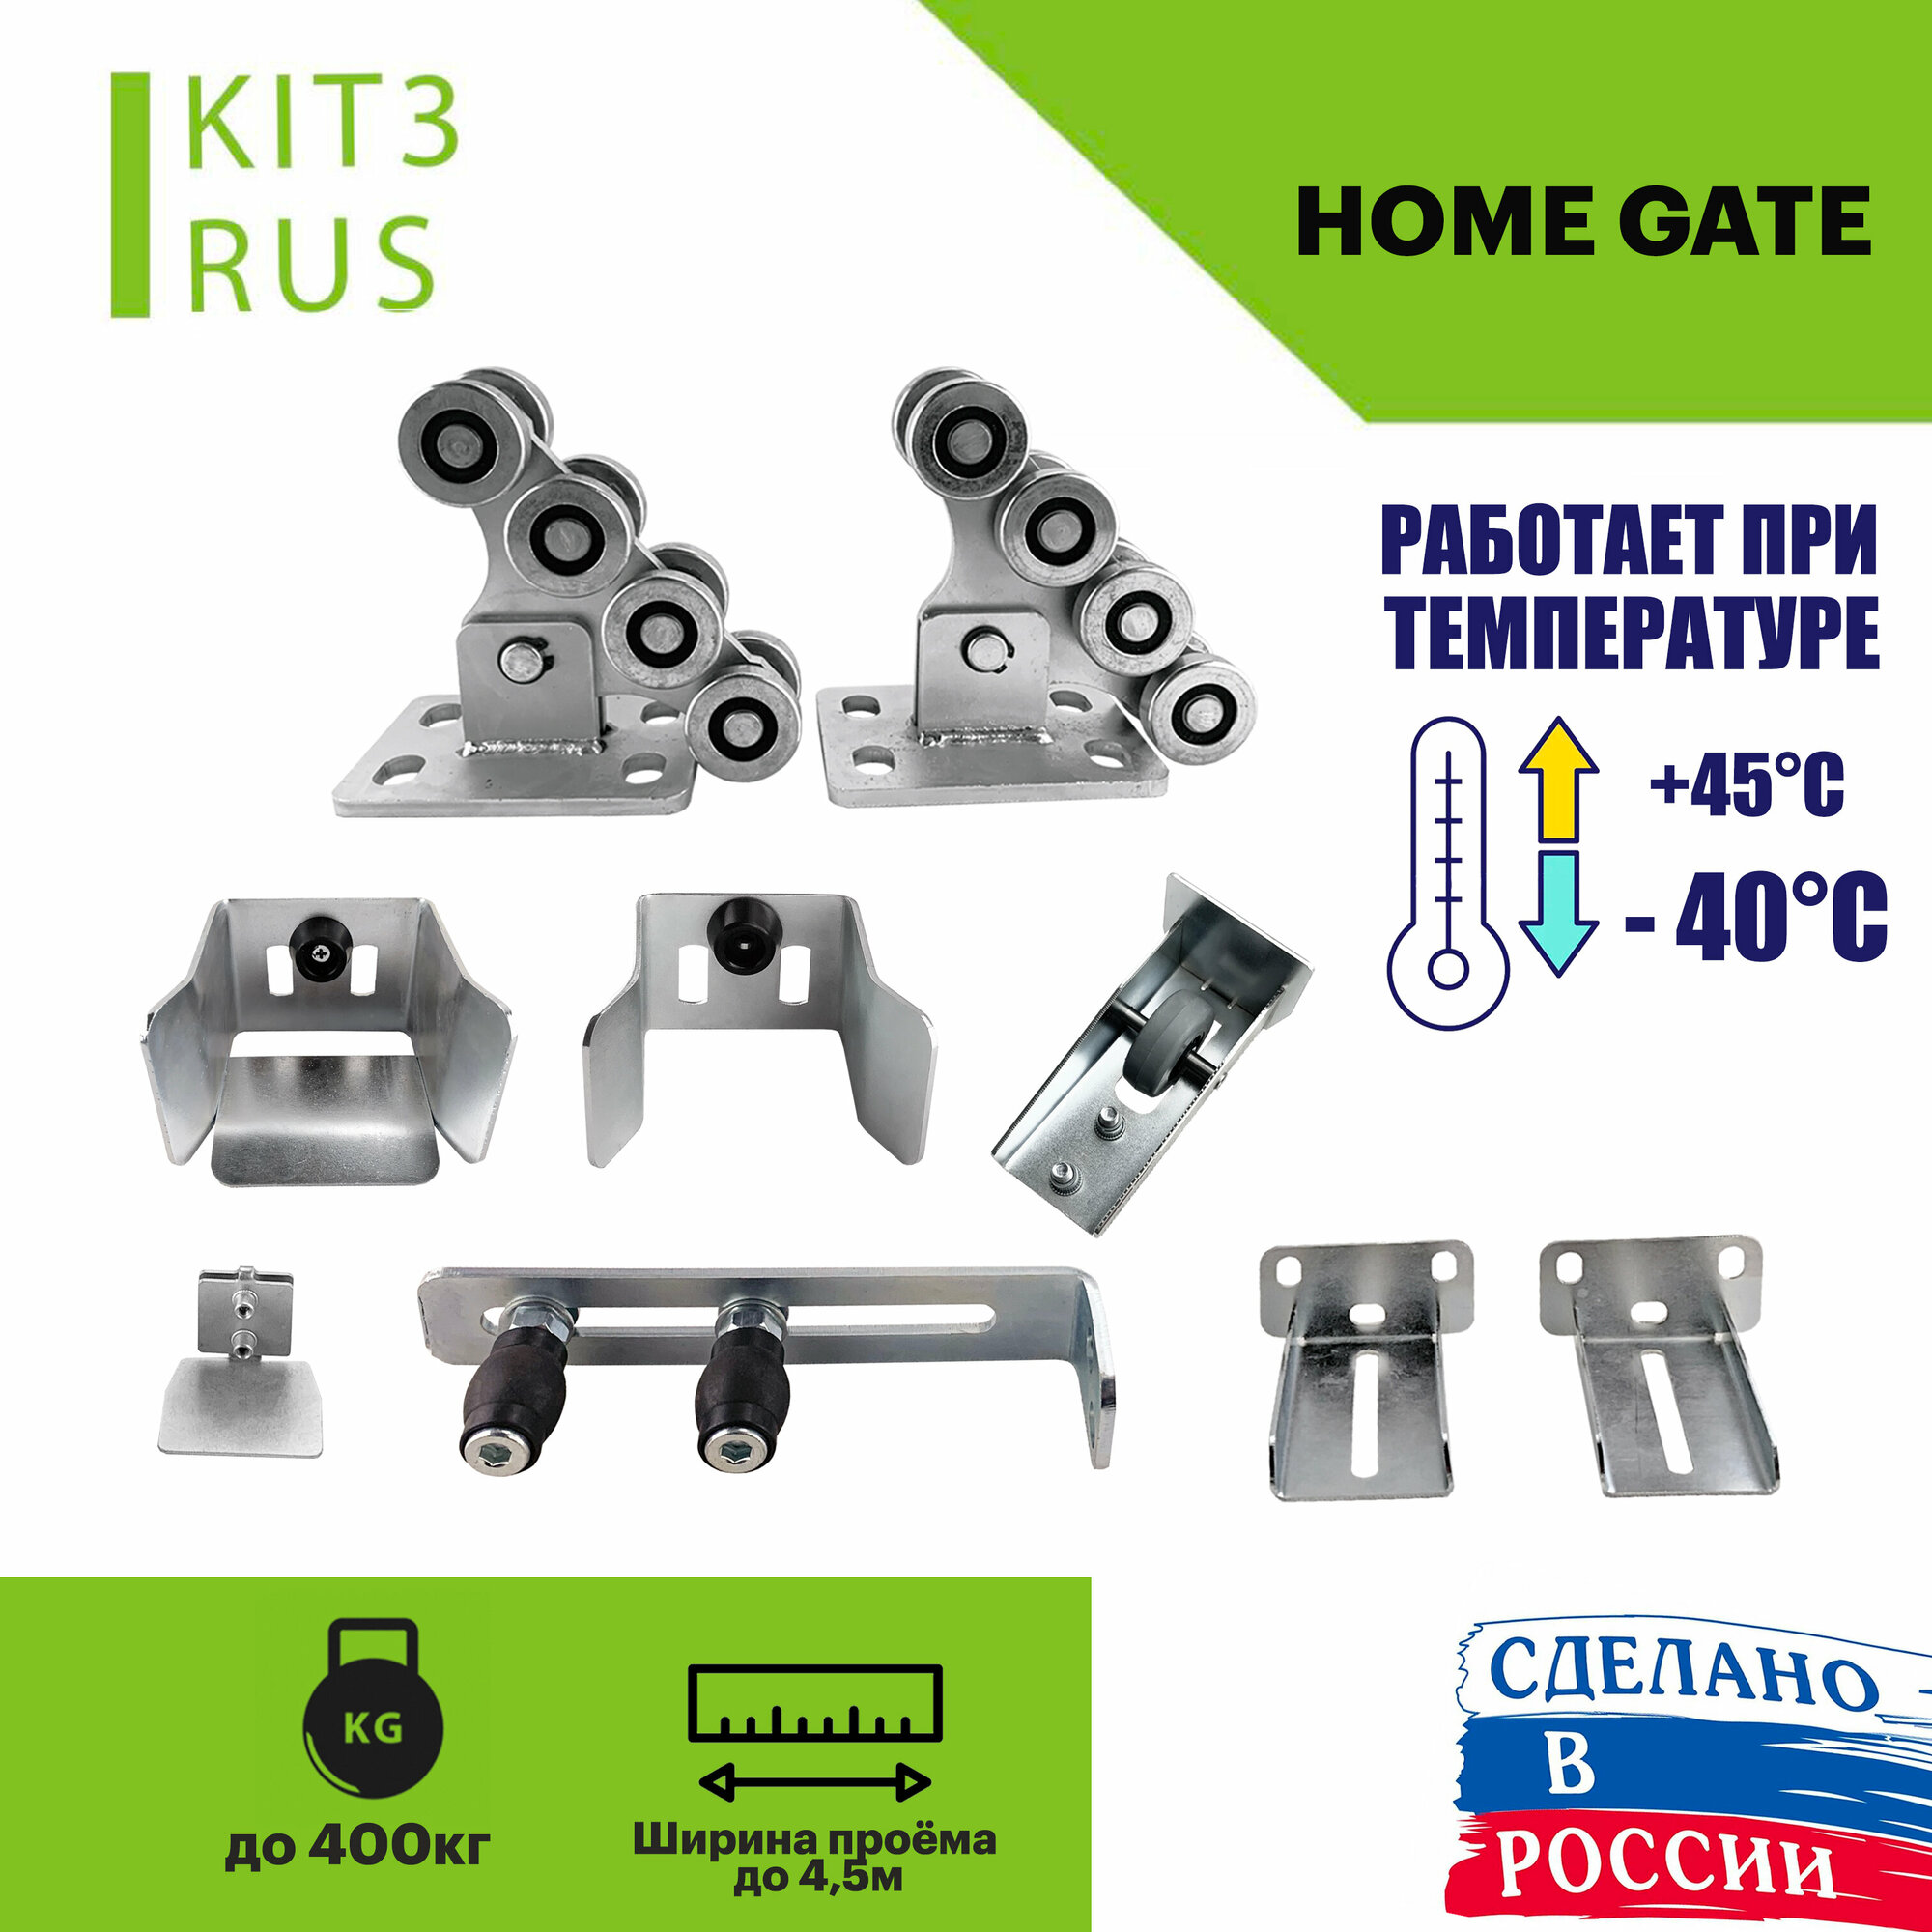 Комплект консольного оборудования для откатных ворот Home Gate KIT3kRUS